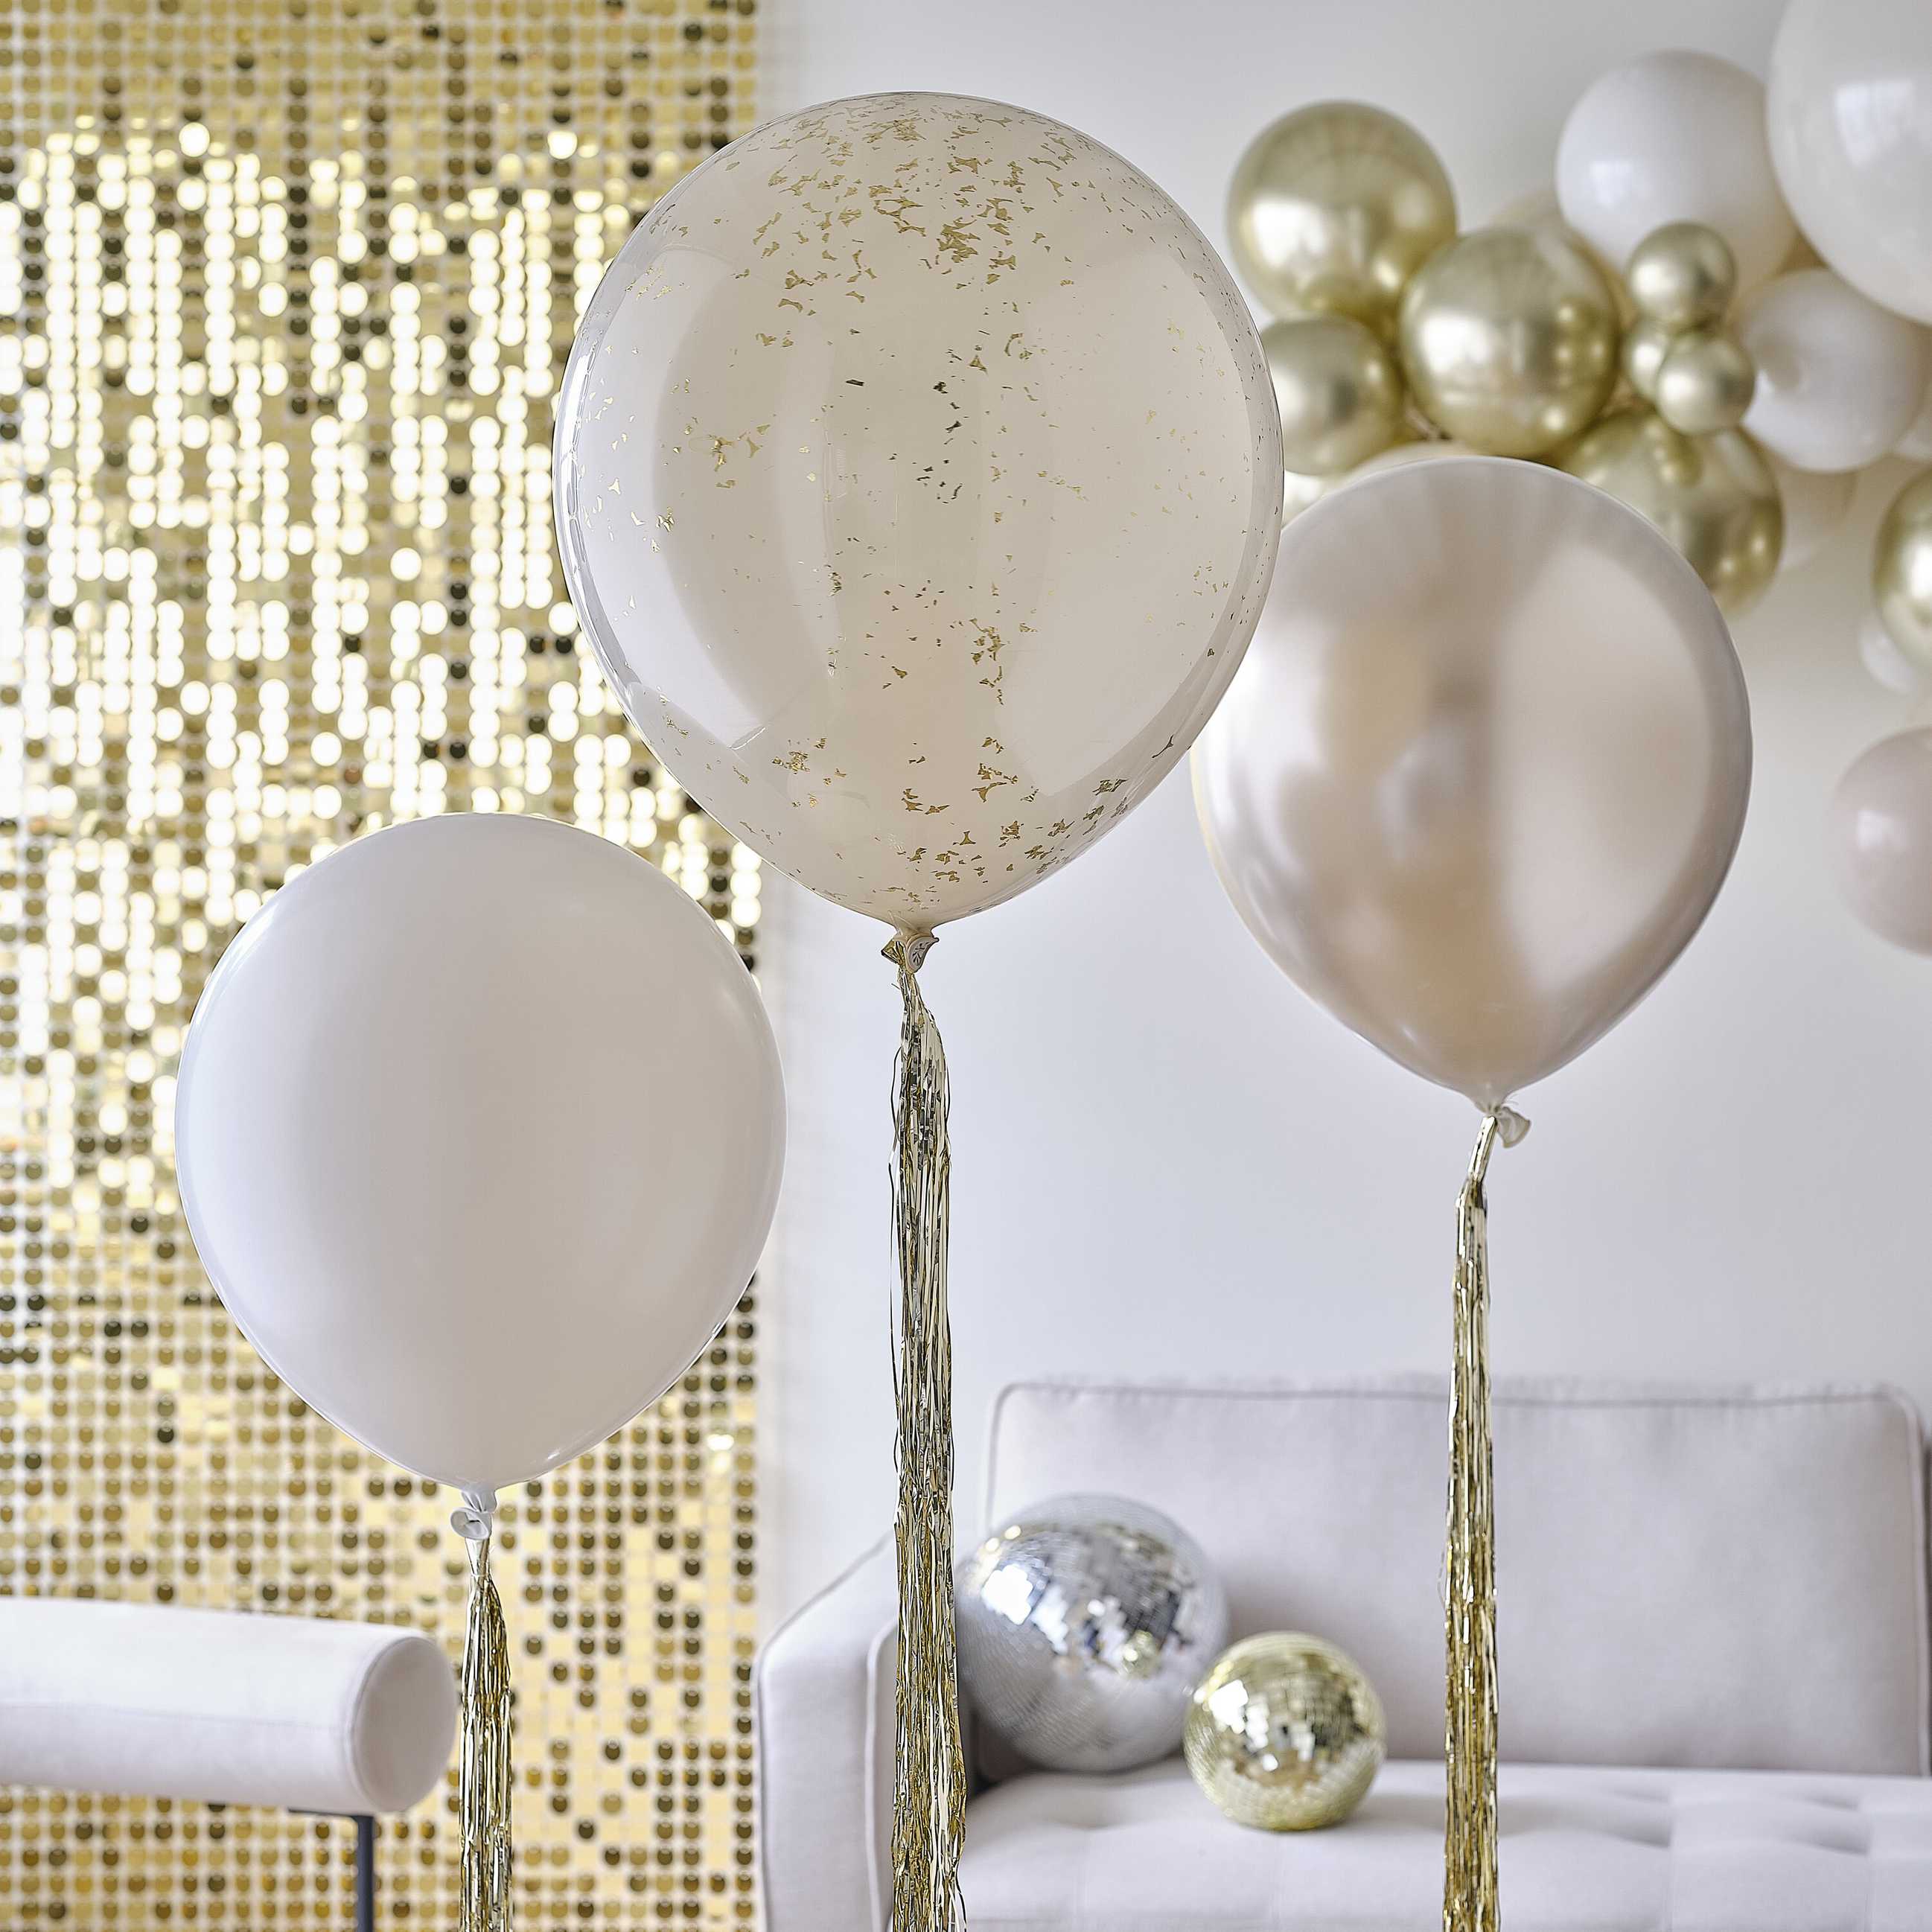 Helij baloni s konfeti Ginger Ray - Neutral & gold z zlatimi repki